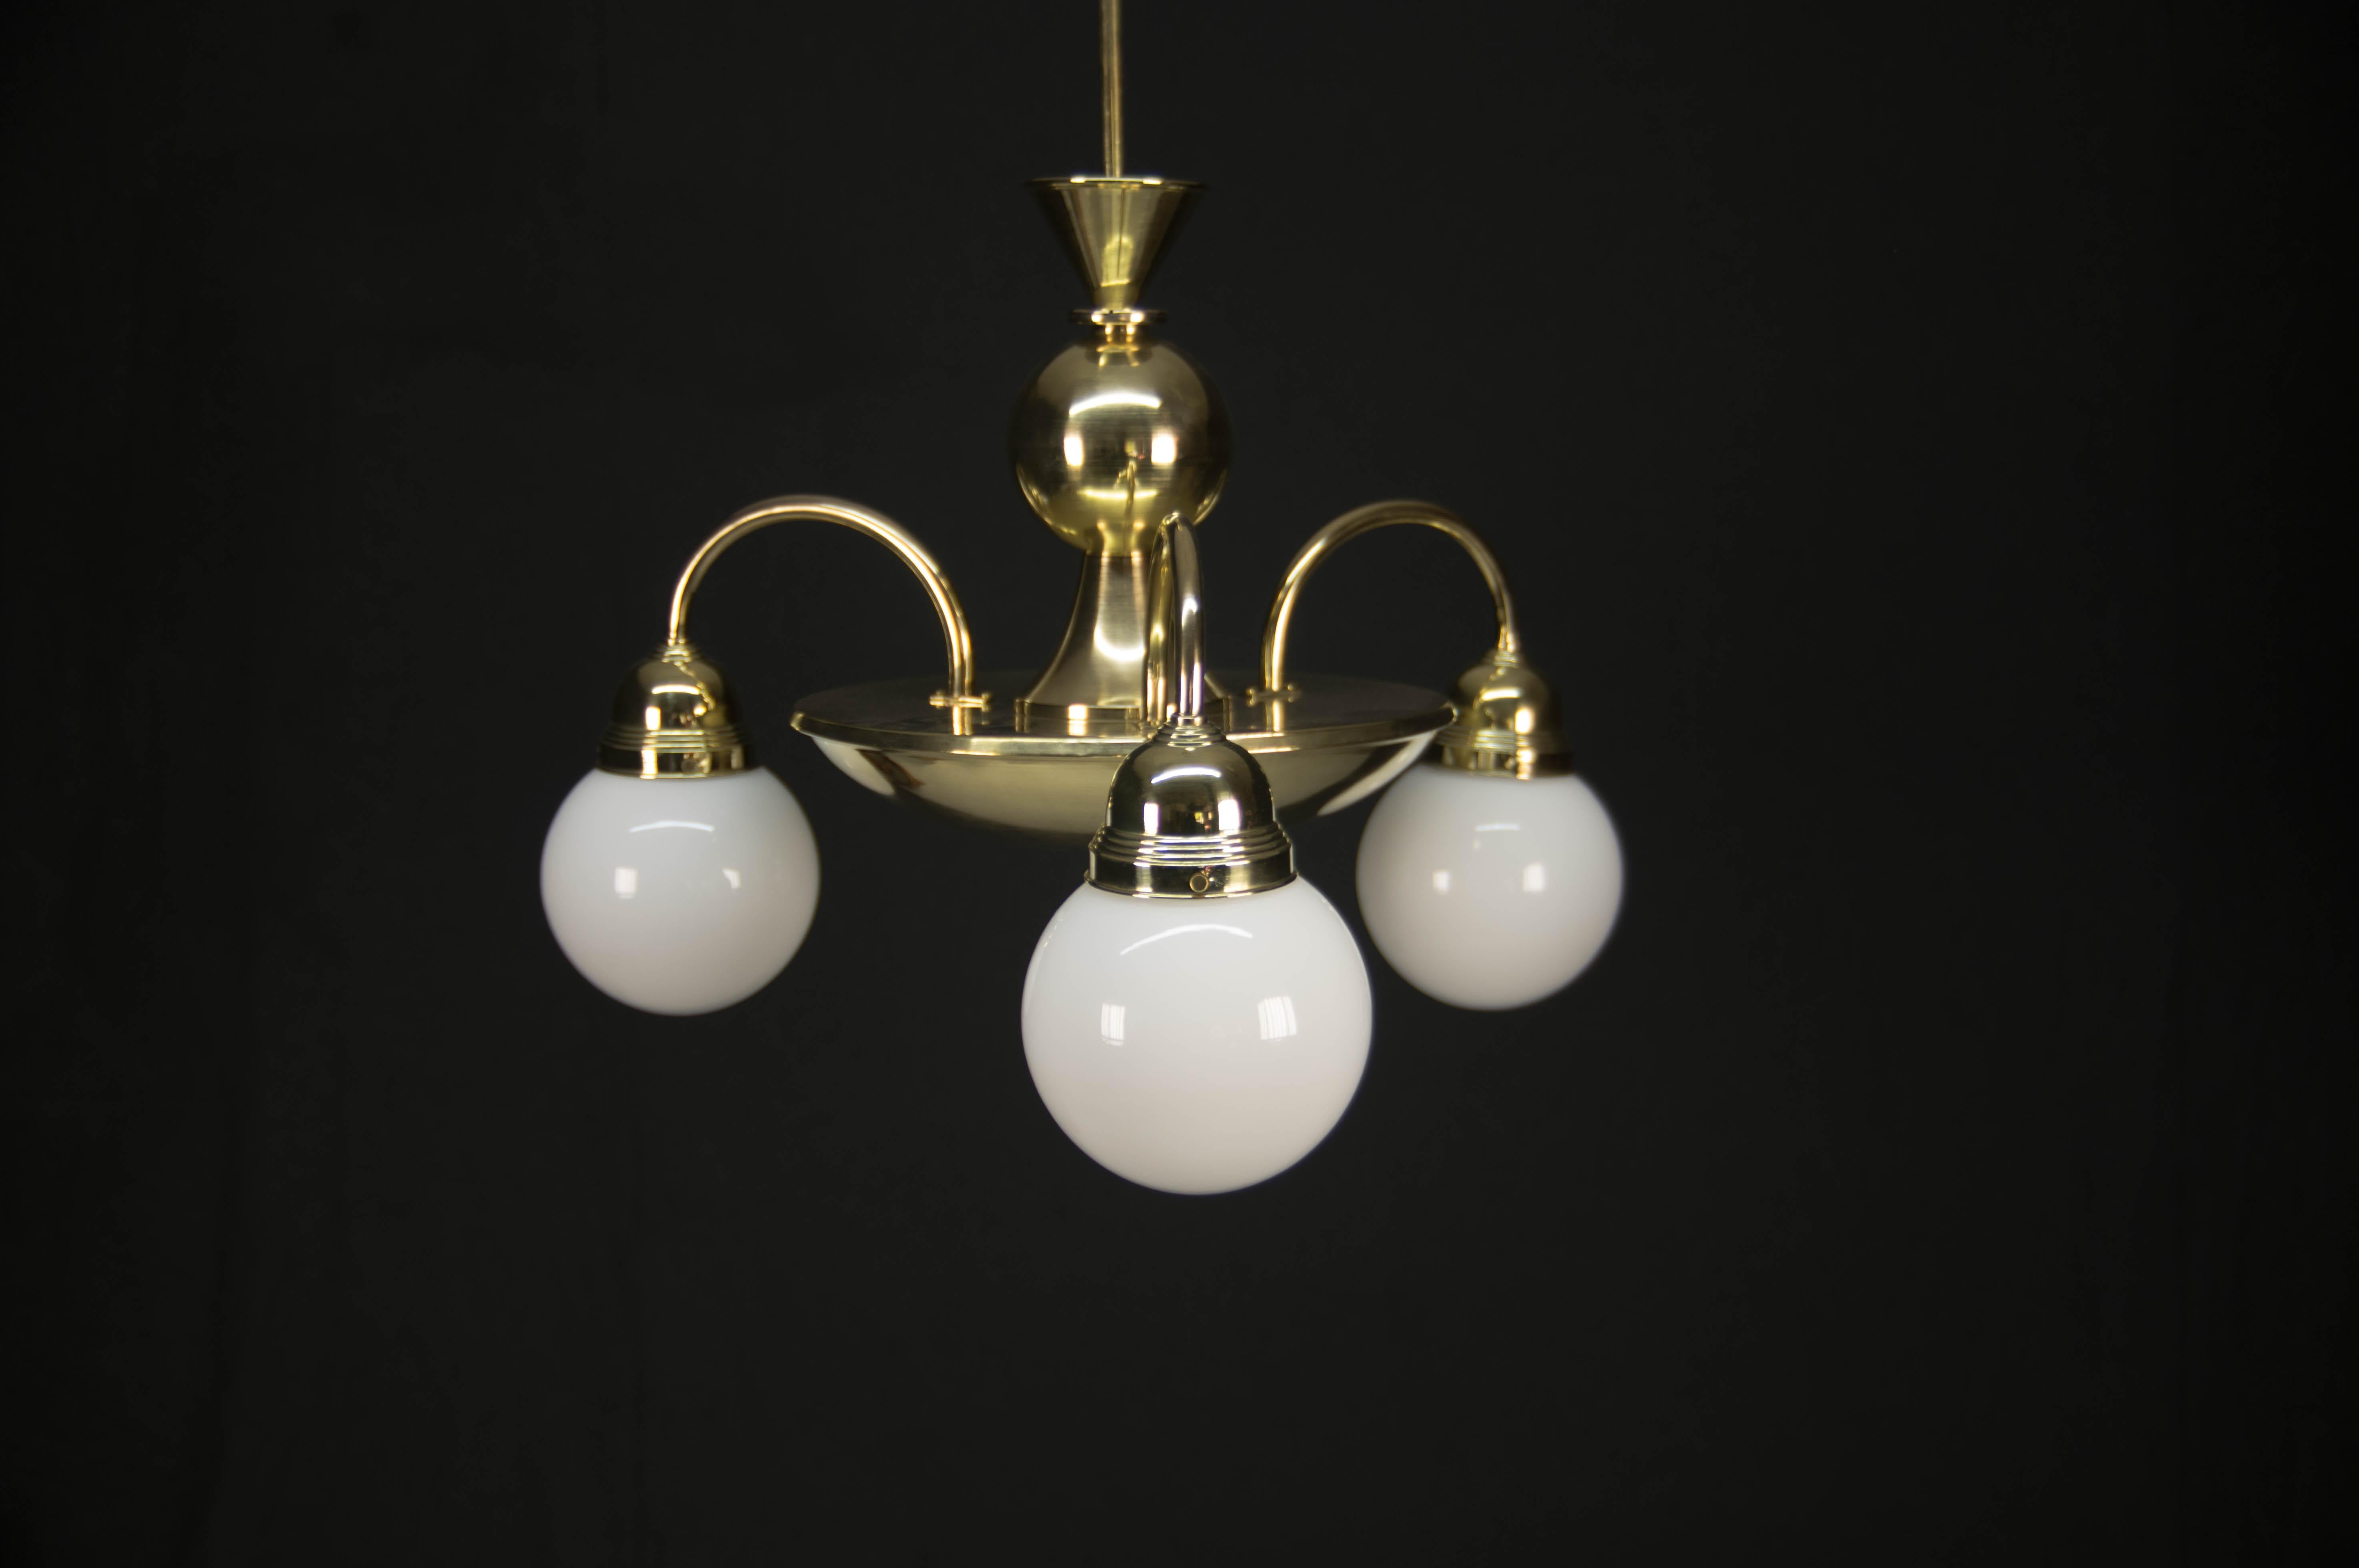 3-flamming rondocubistic brass chandelier.
Entièrement restauré
3x60W, ampoules E25-E27
Rewired
Compatible avec le câblage américain.